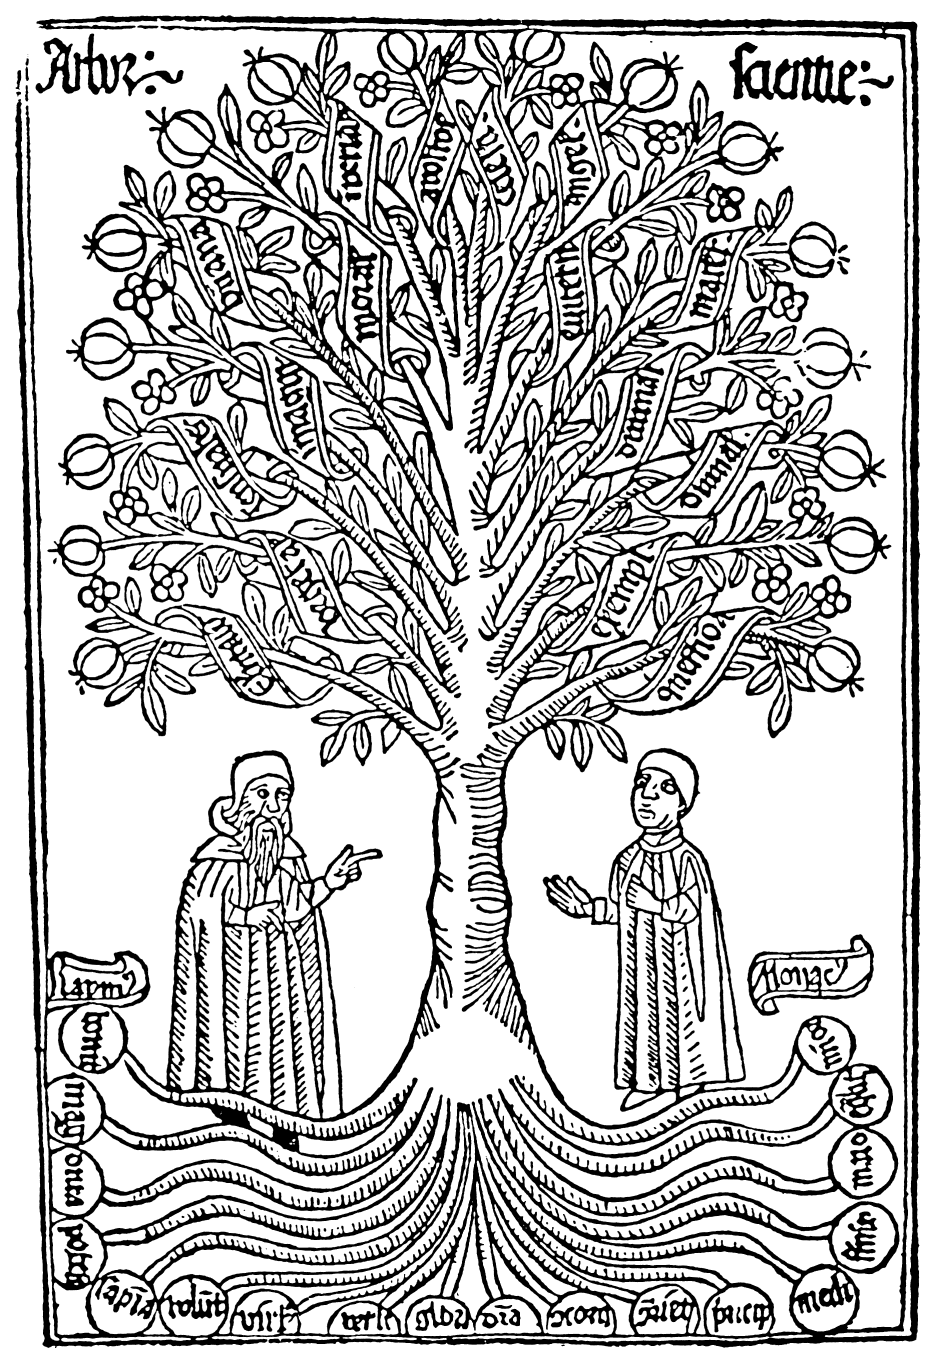 Arbor Scientiae, late thirteenth century, Ramon Llull. [via]